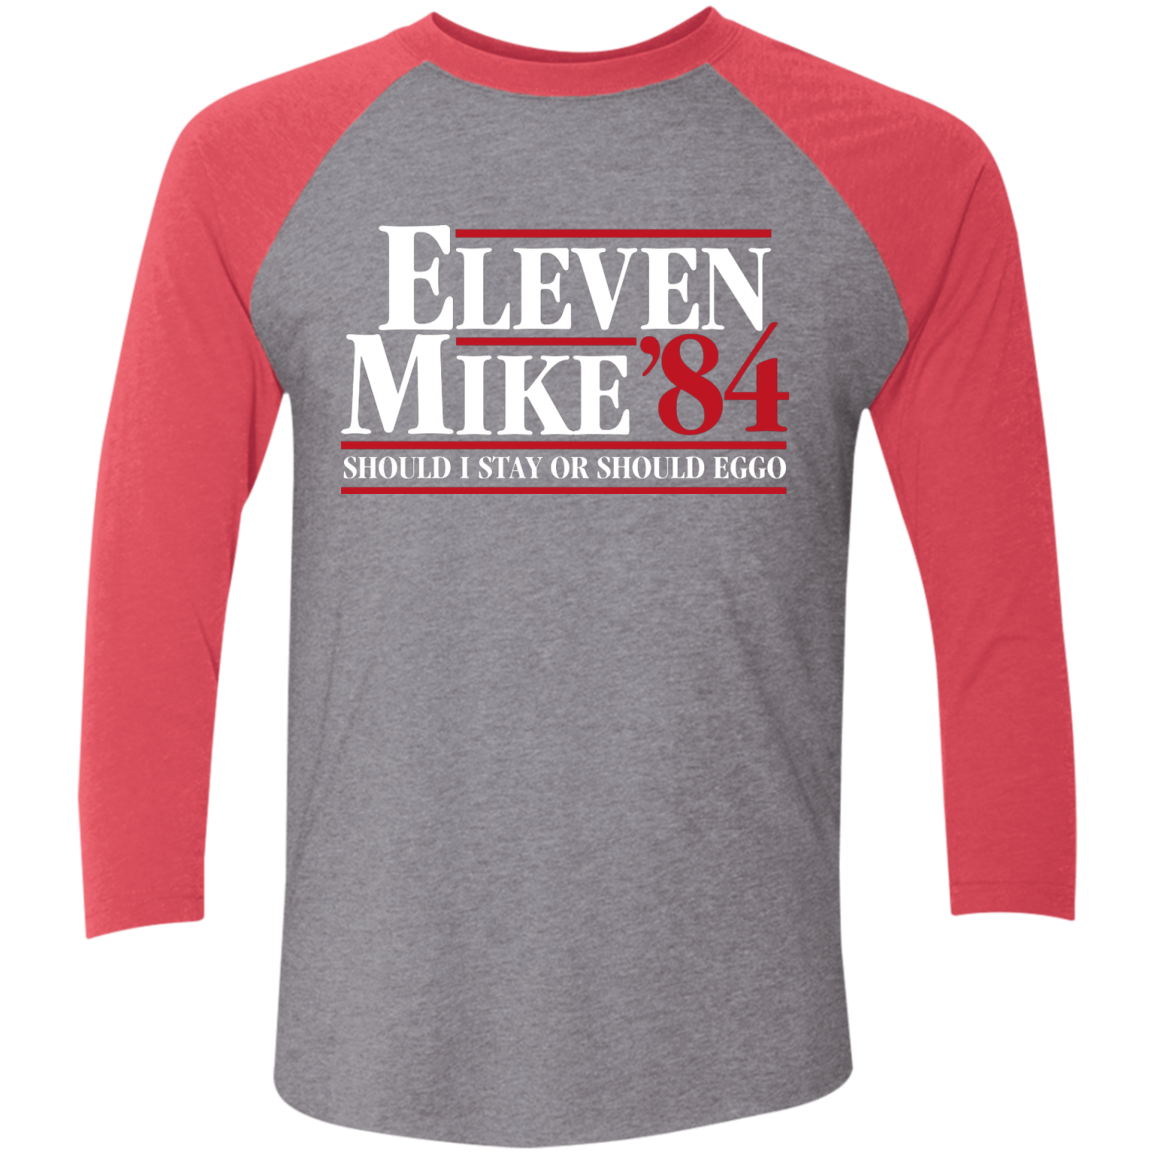 Eleven Mike 84 - Should I Stay or Should Eggo Men's Triblend 3/4 Sleeve